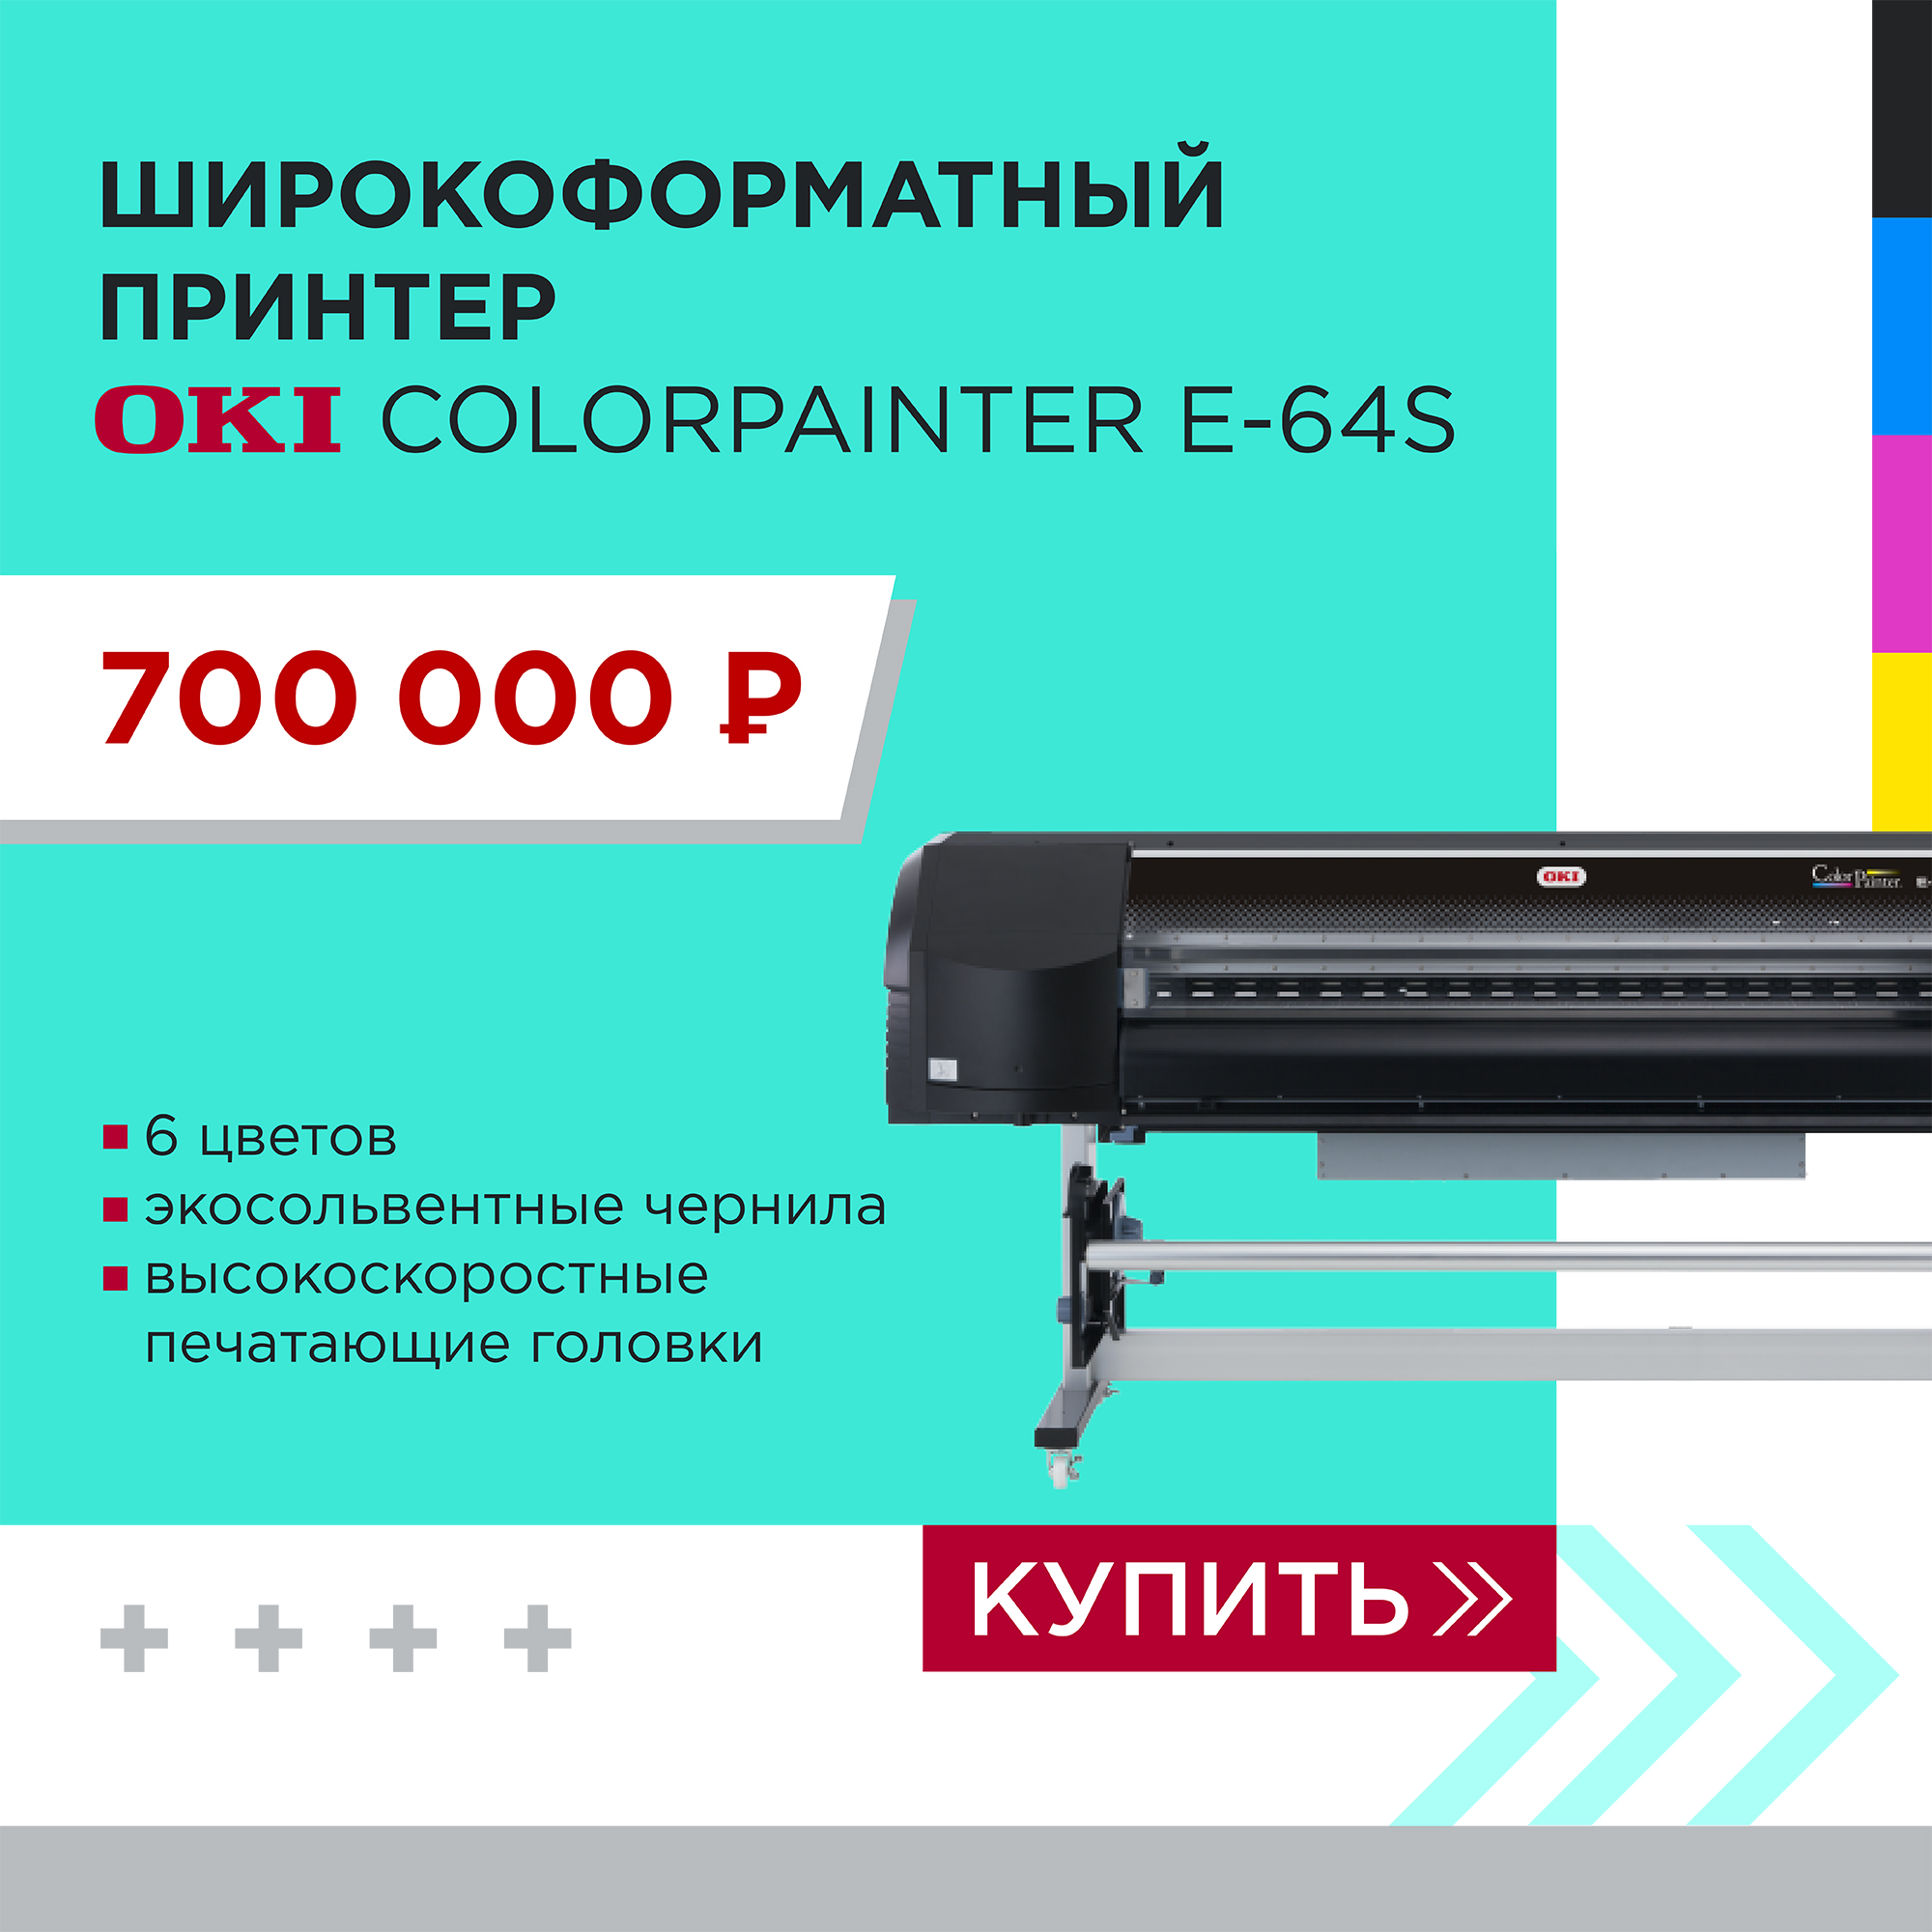 Акция на принтер OKI ColorPainter E-64S